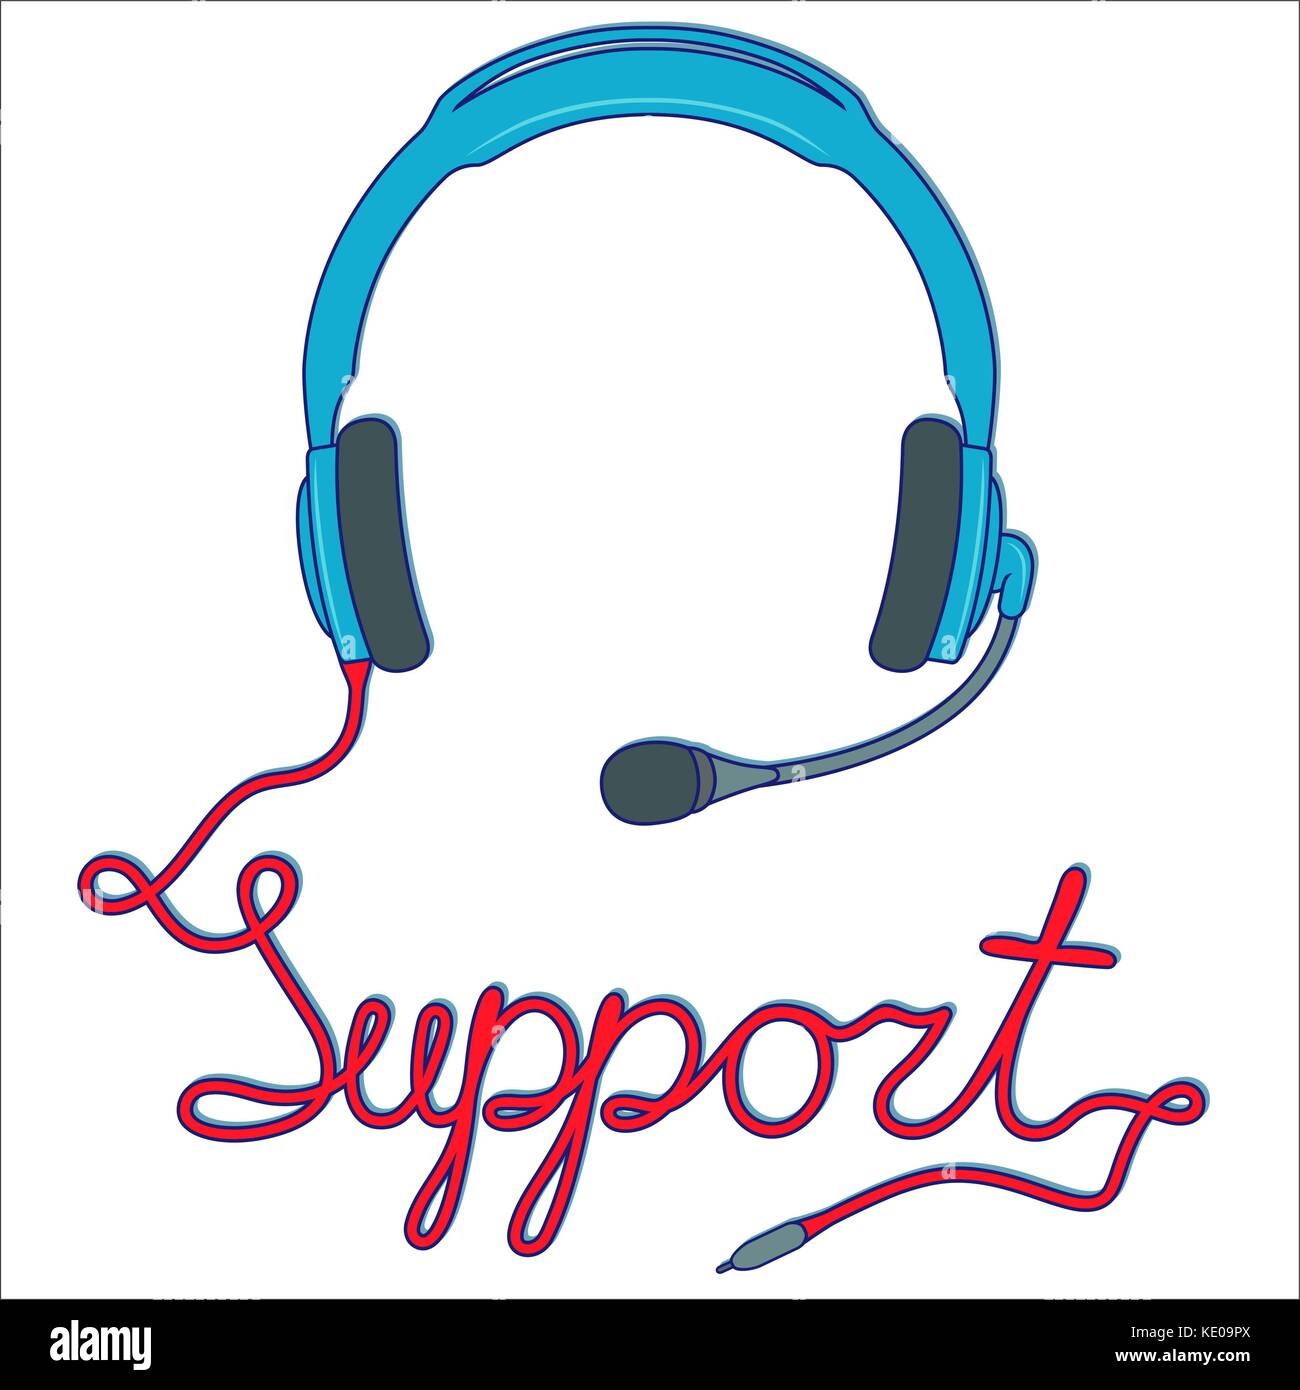 Blue Kopfhörer mit Mikrofon und mit roten Kabel als Inschrift, online support service Konzept, Vector Illustration isoliert auf dem weißen backgro Stock Vektor